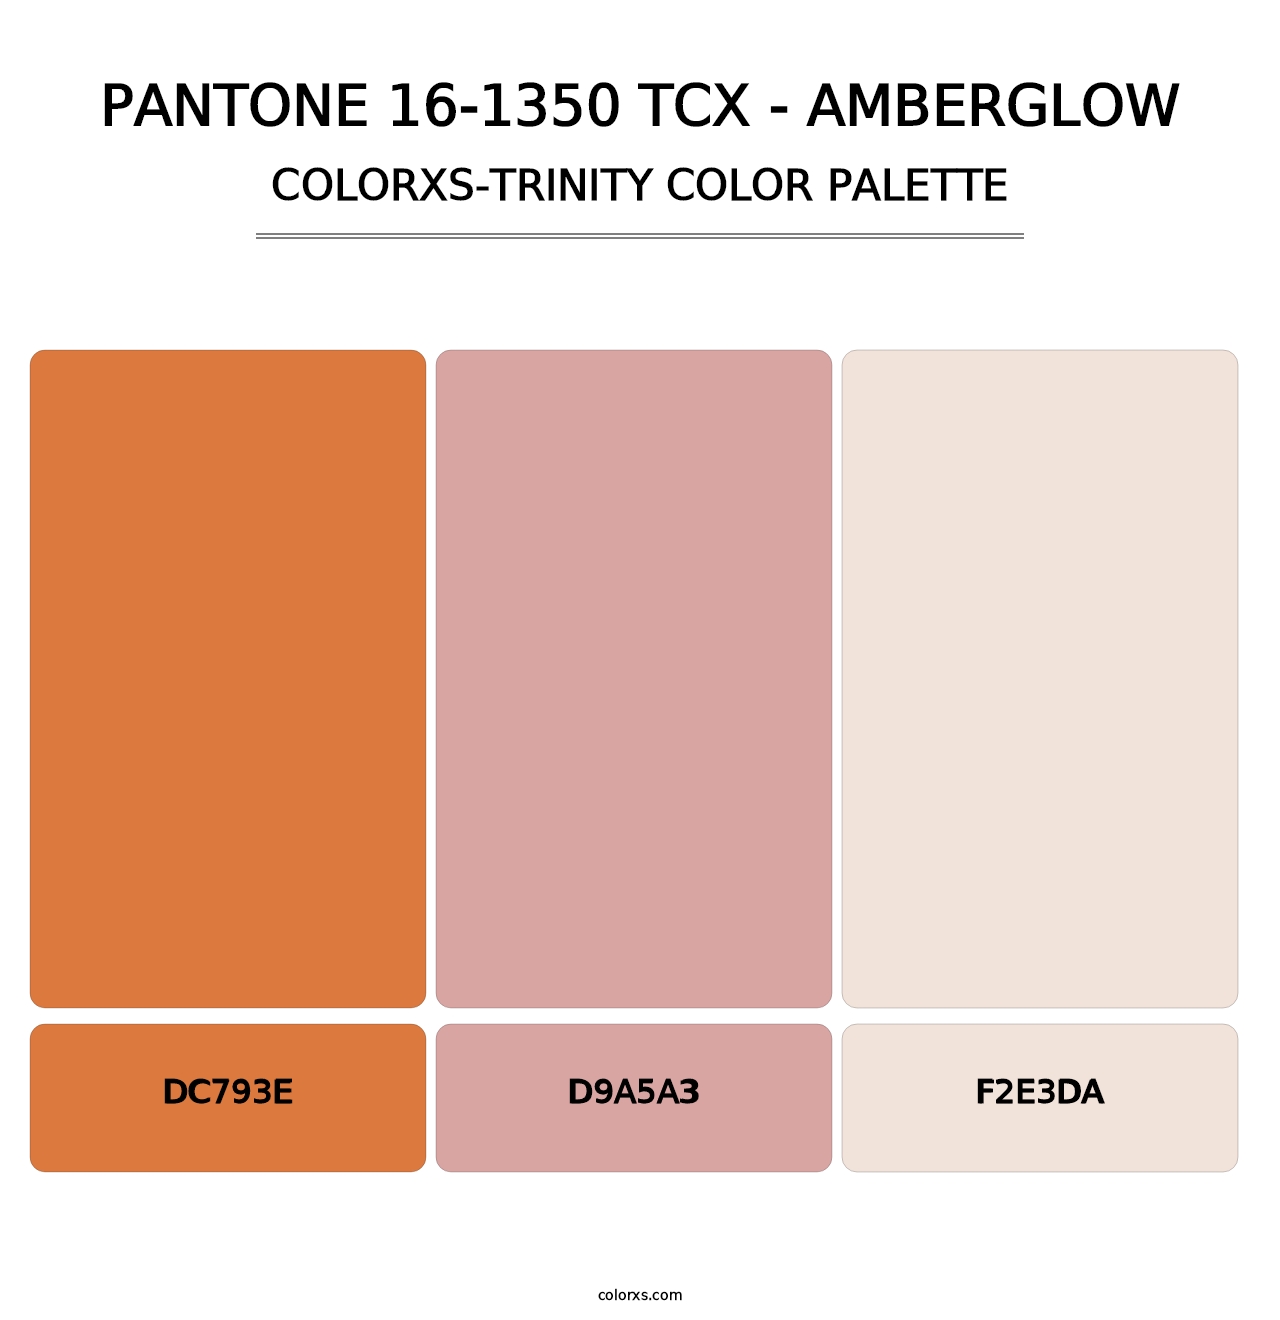 PANTONE 16-1350 TCX - Amberglow - Colorxs Trinity Palette